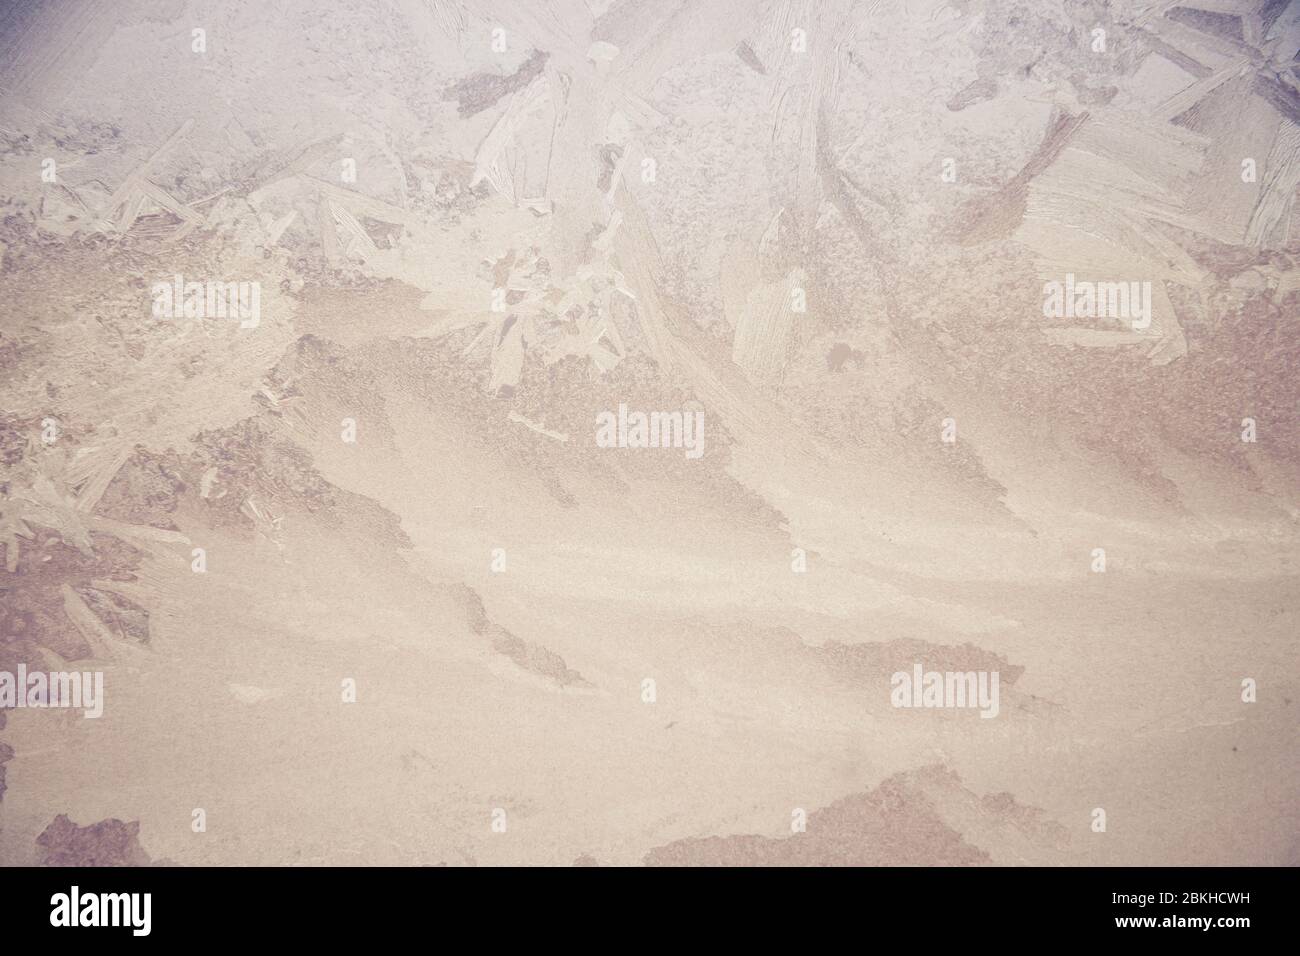 Ein eisiger frost Hintergrundbild. In diesem Bild sehen Sie die einzigartigen Muster erstellt, wenn Frost Formen auf Glas. Stockfoto